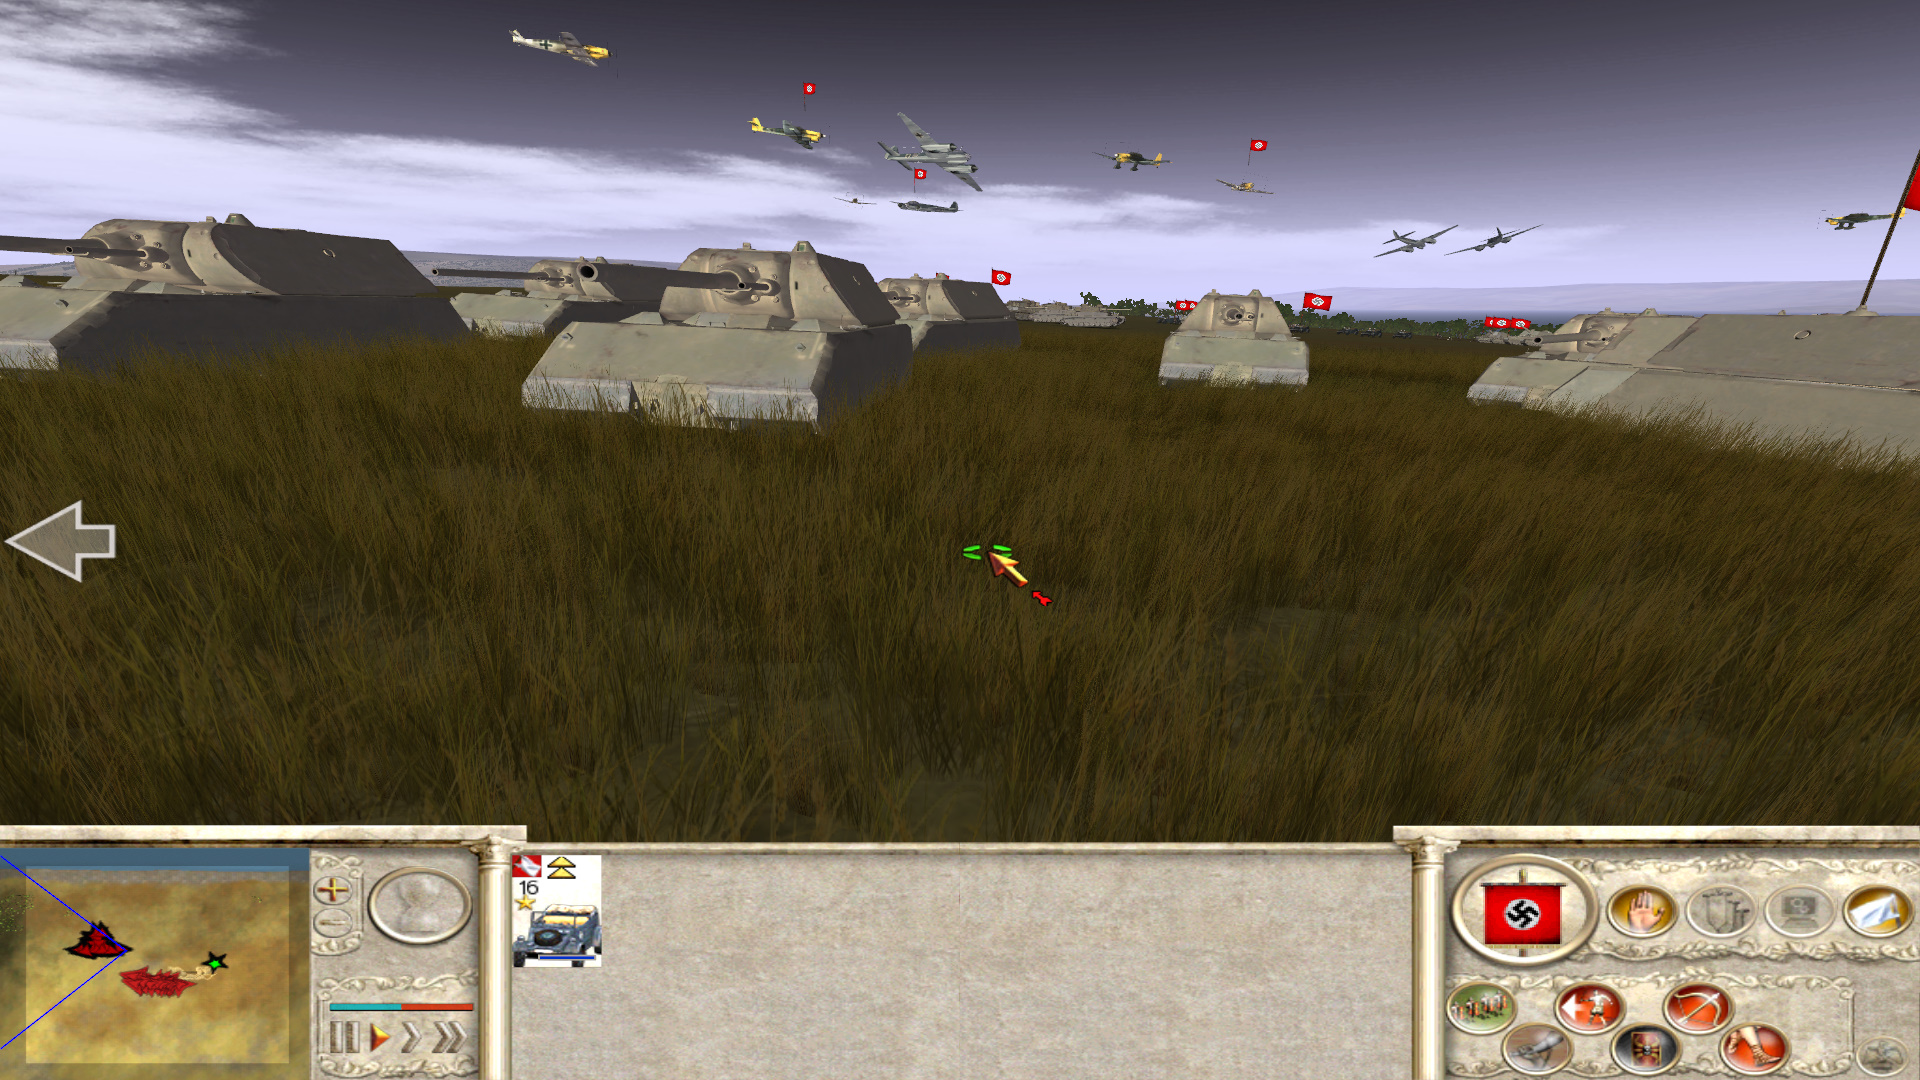 games similar to rome total war